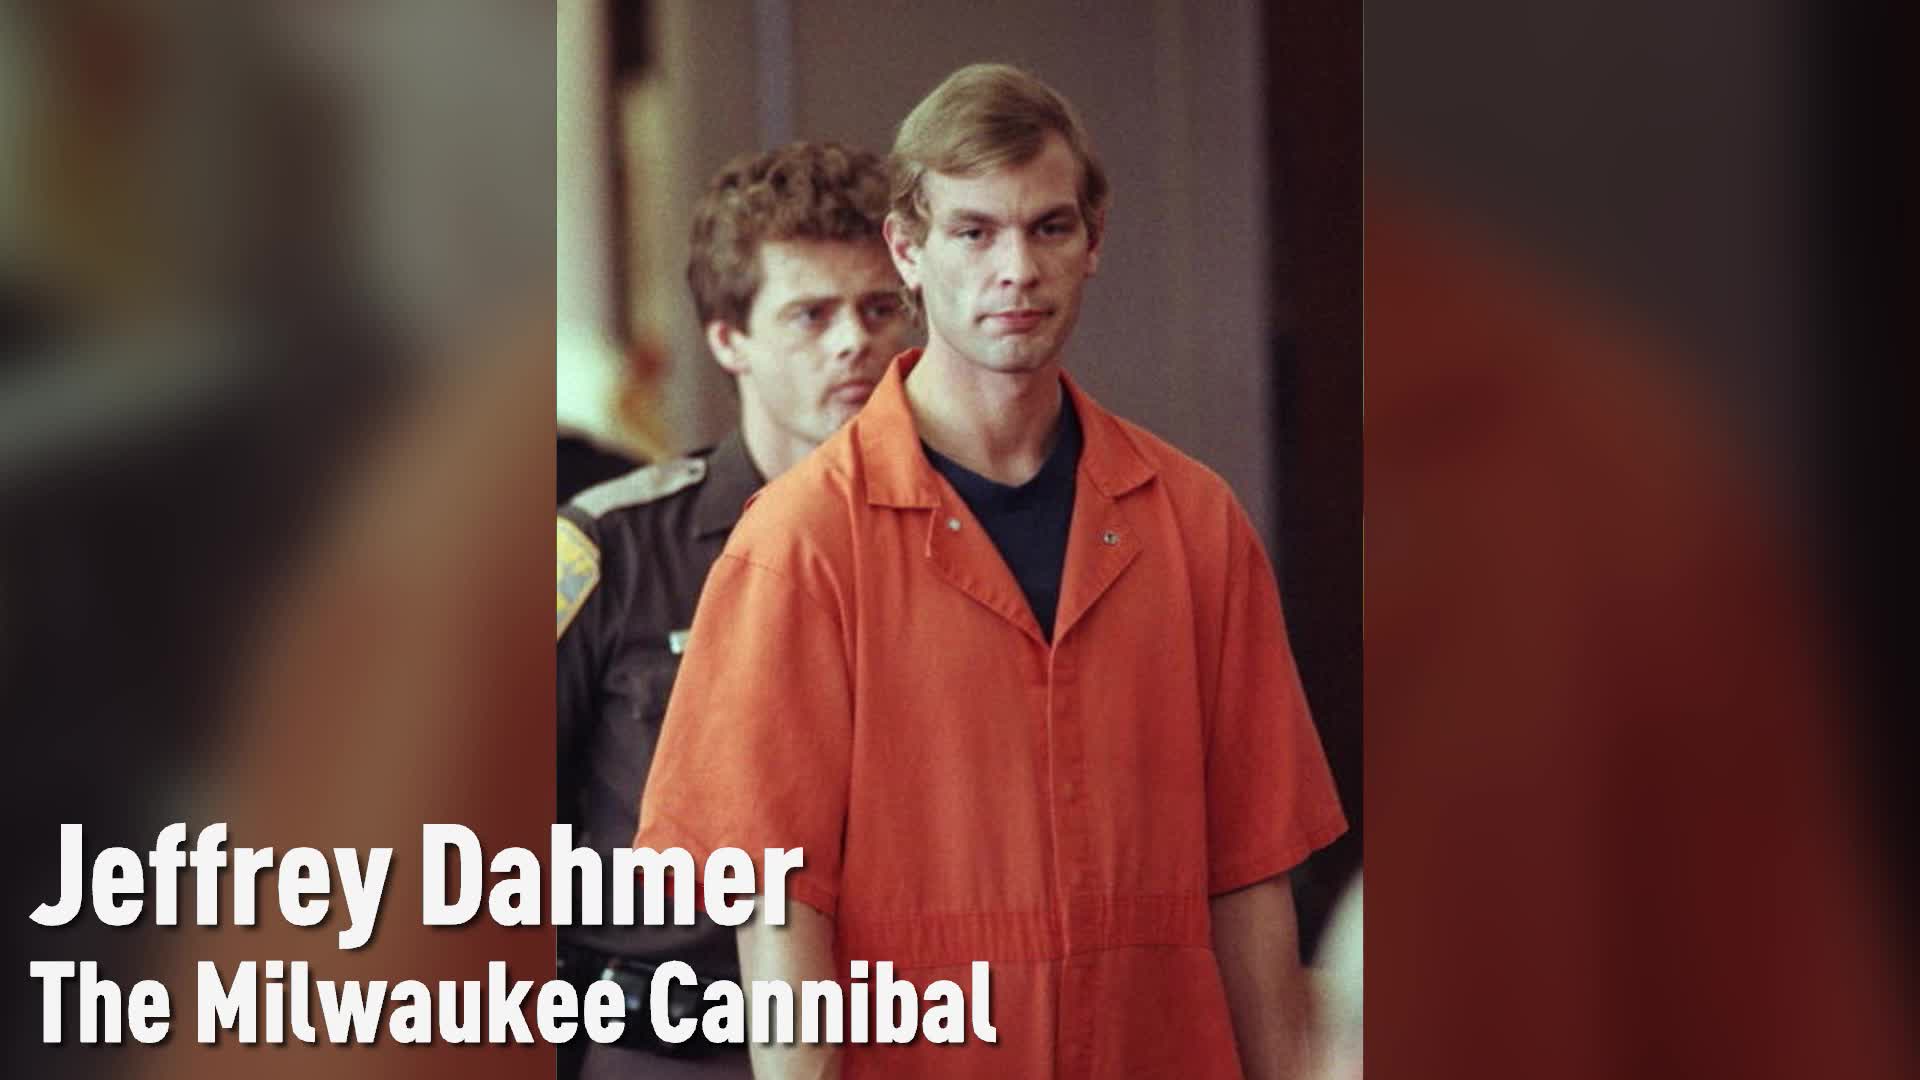 Jeffrey Dahmer Porn - The Jeffrey Dahmer Case, Explained